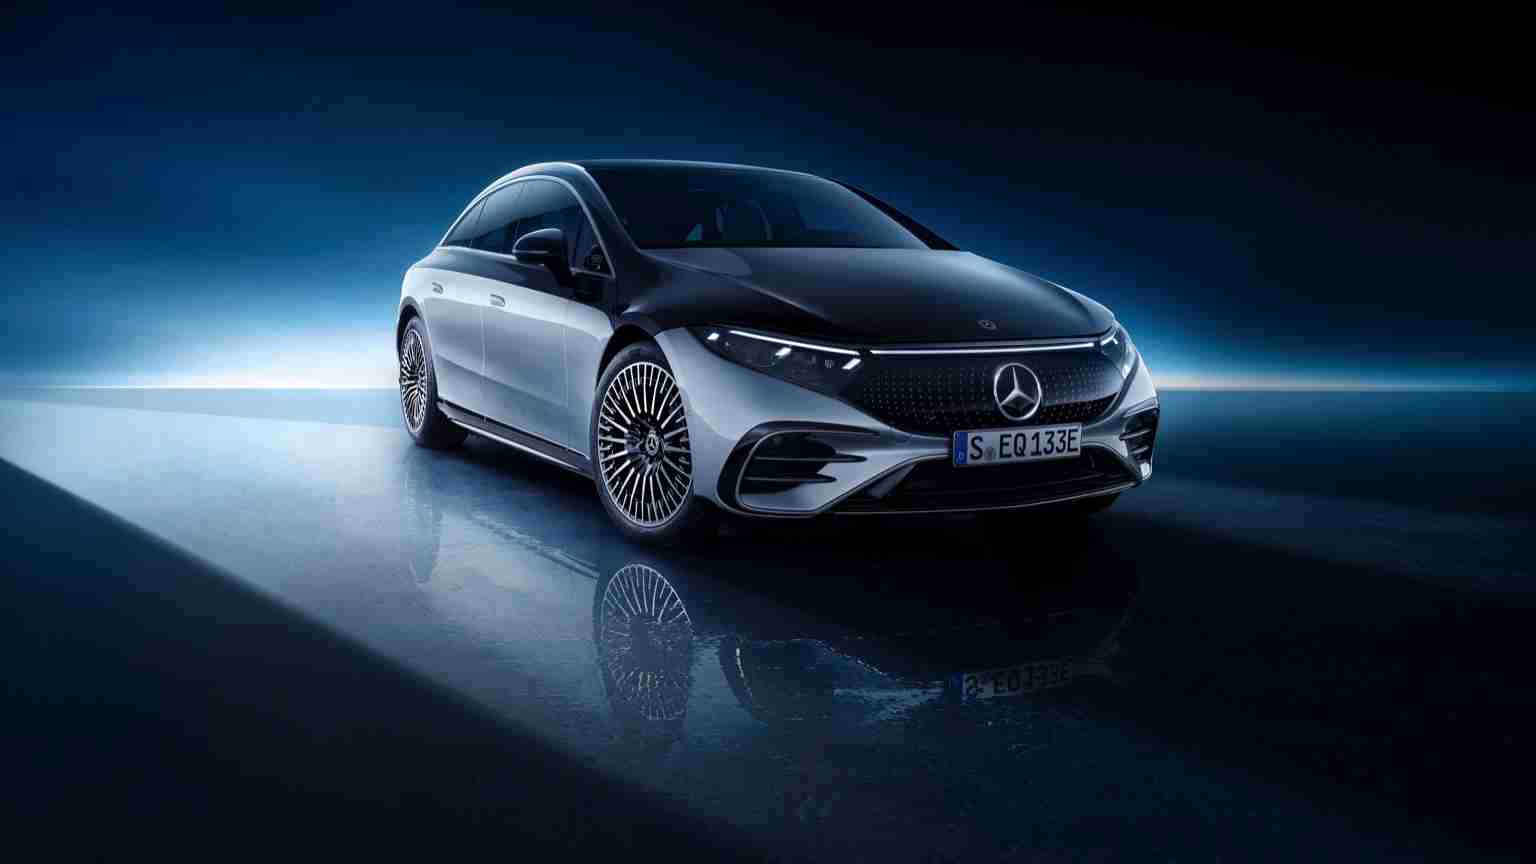 Mercedes EQS 580 4MATIC Release Date